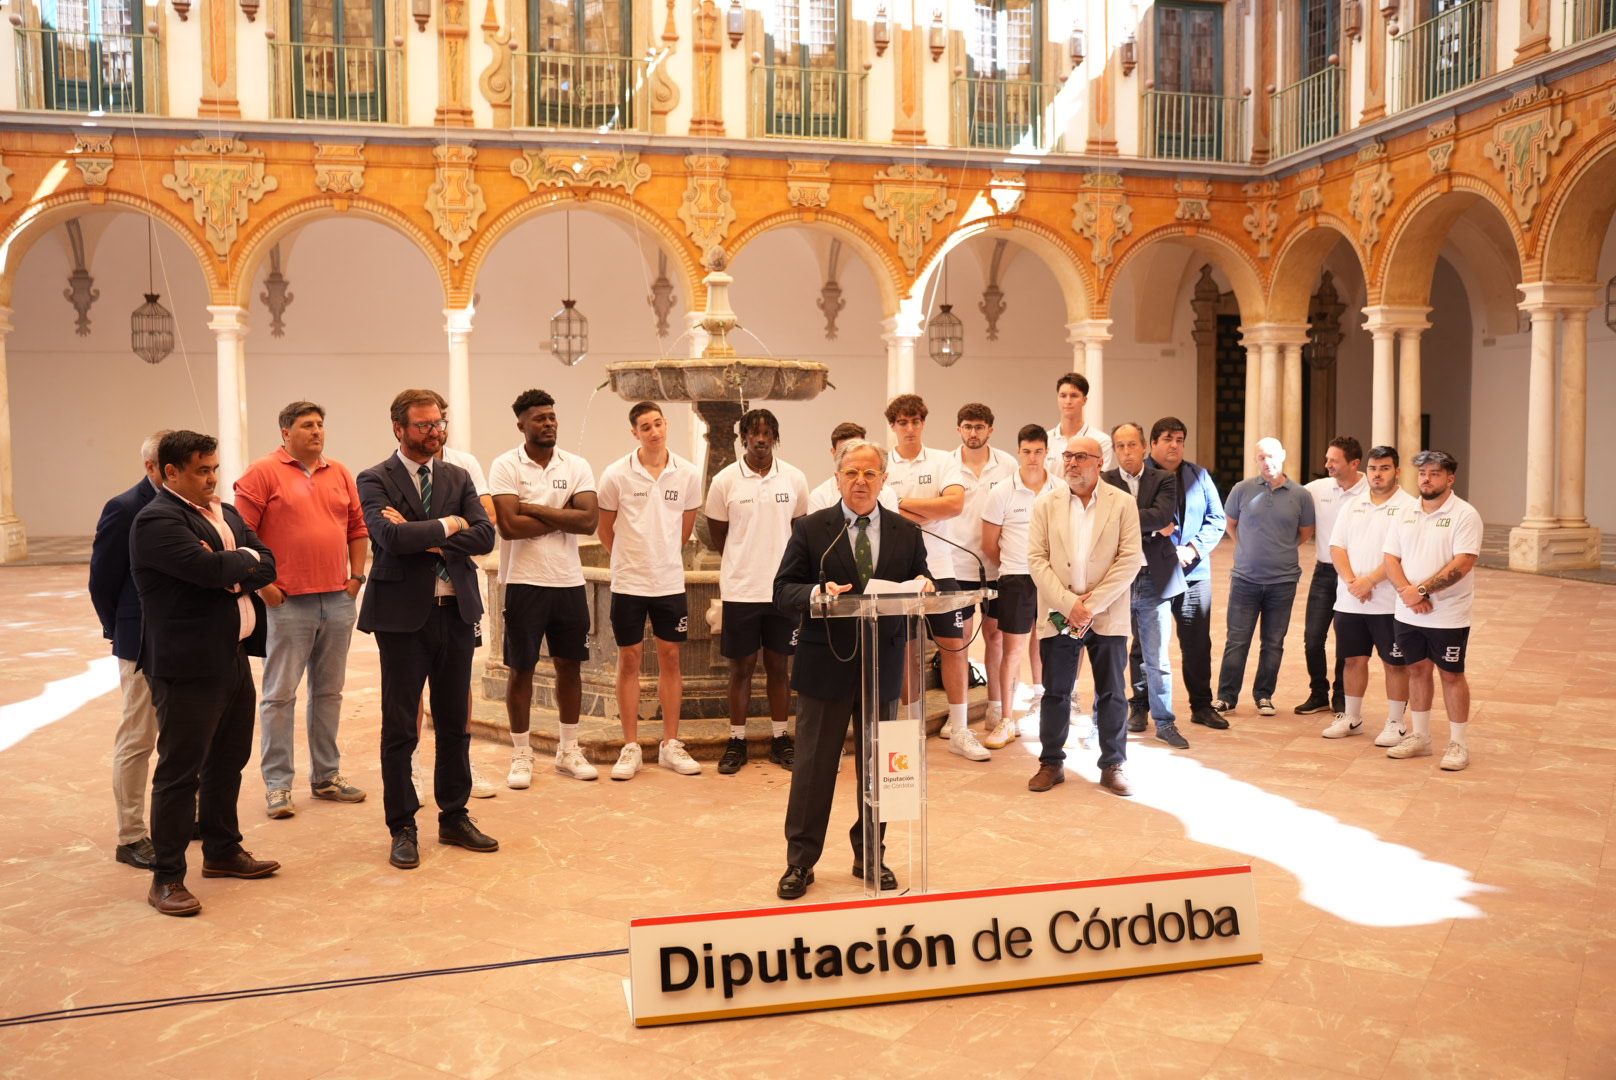 La visita del Coto Córdoba Baloncesto a la Diputación Provincial, en imágenes